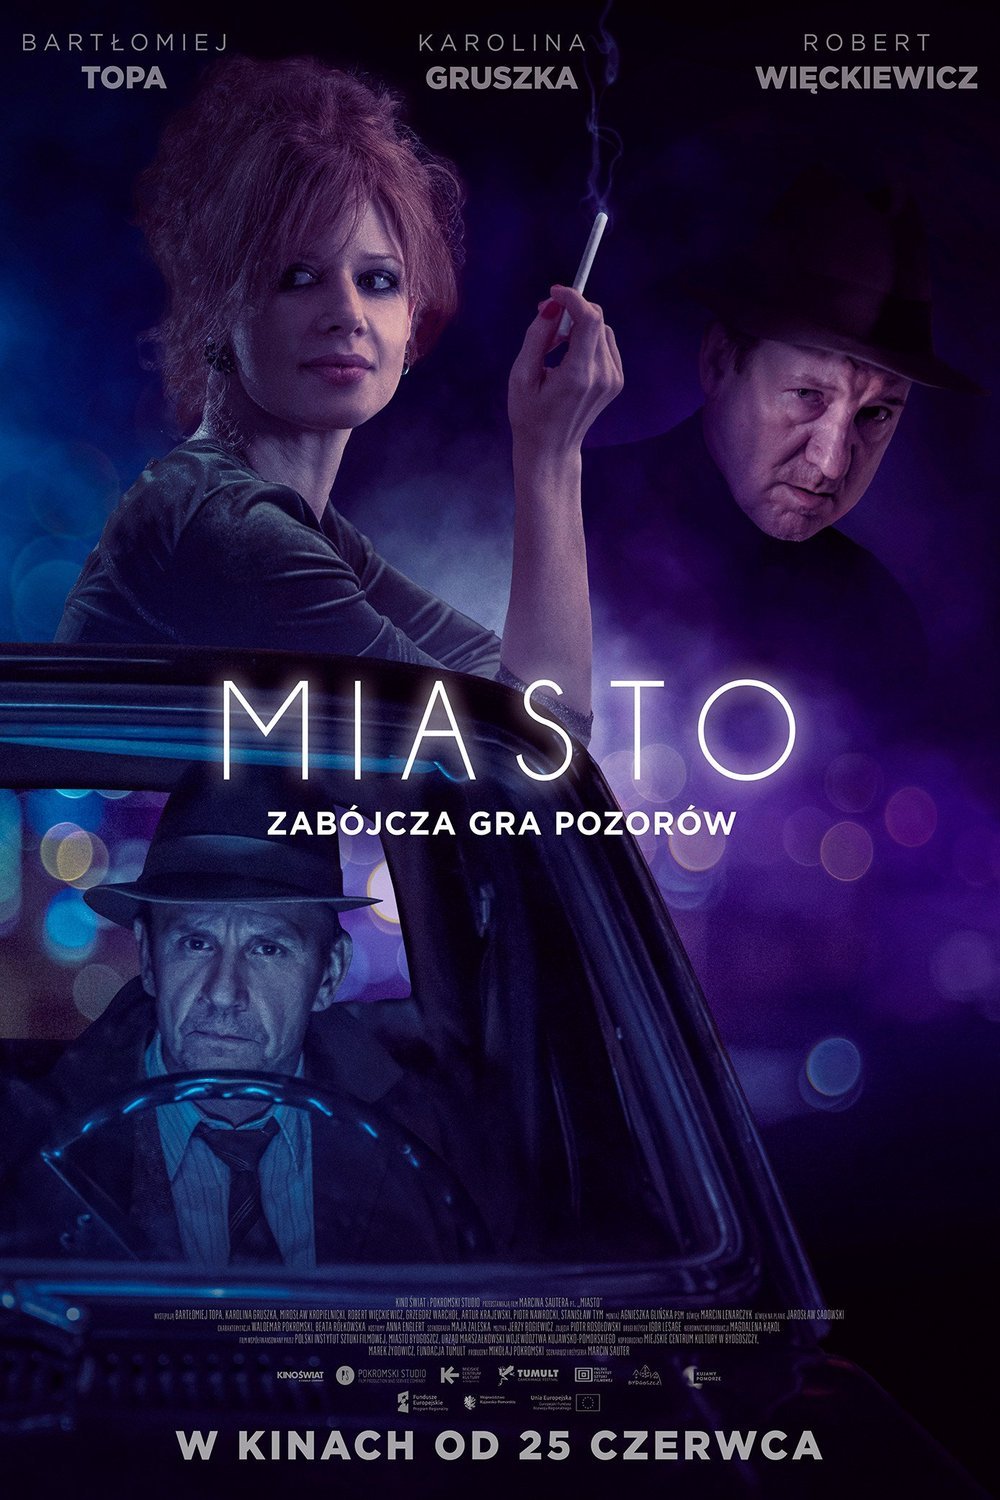 L'affiche originale du film Miasto en polonais